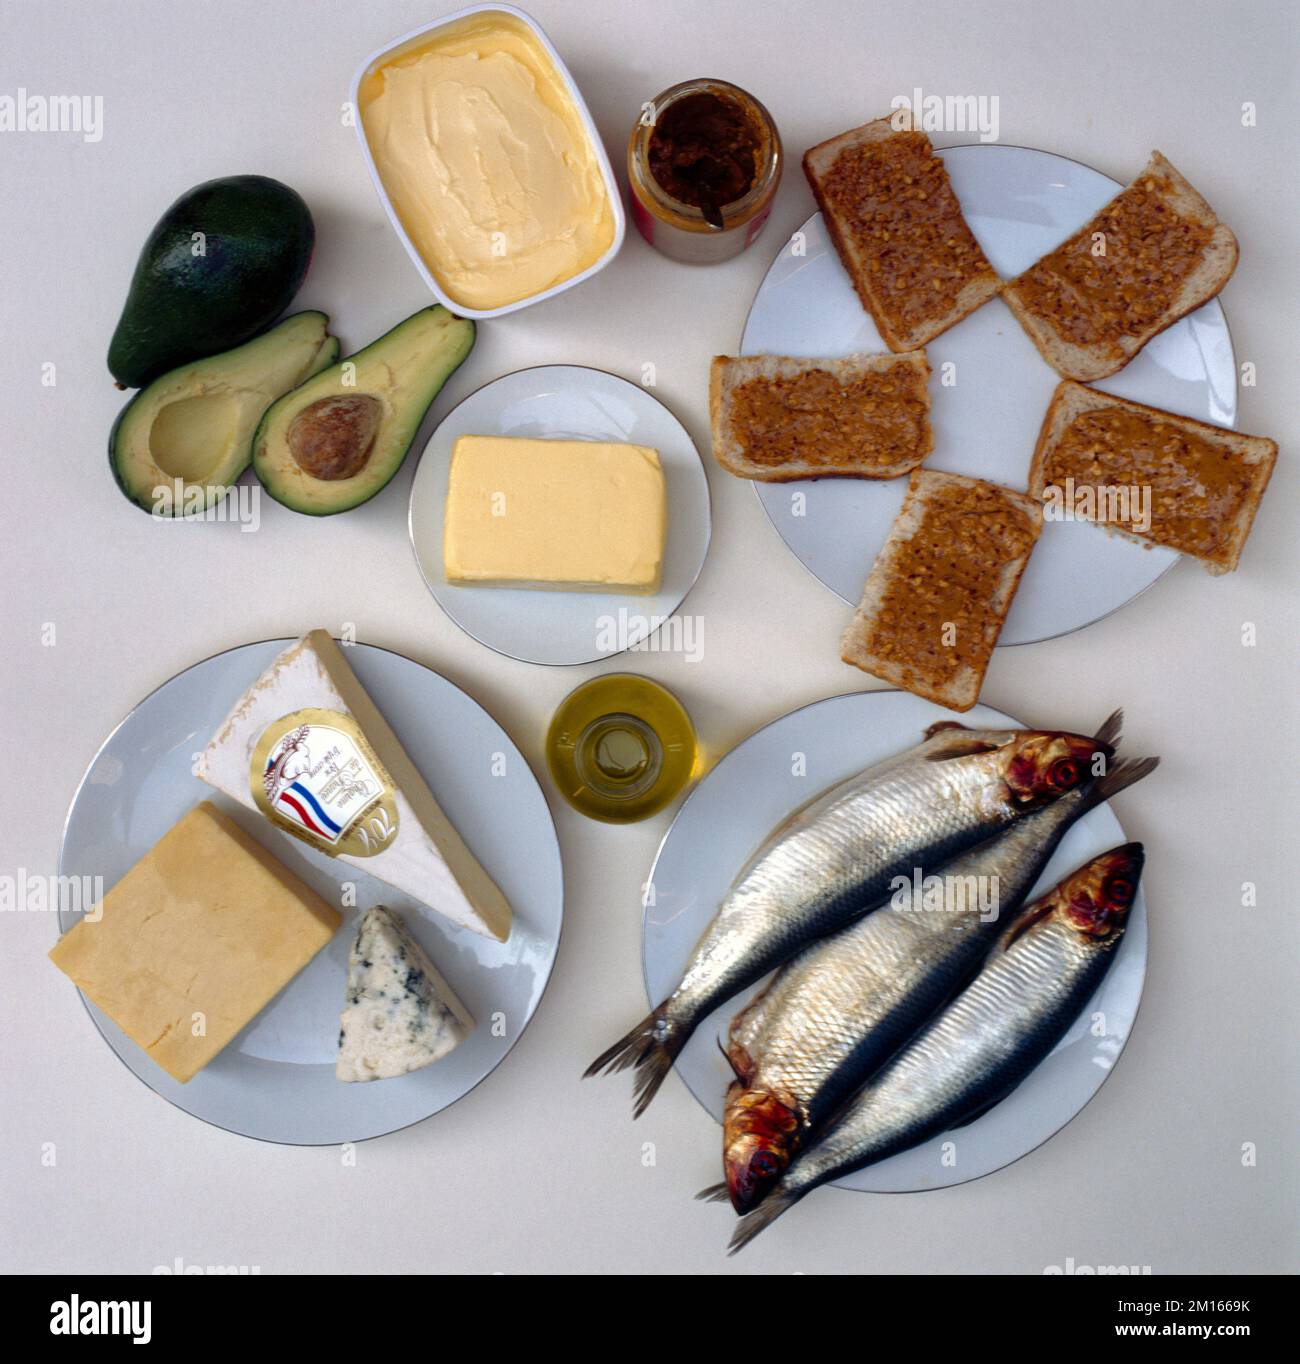 Graisses et huiles alimentaires - margarine, beurre, fromage, beurre d'arachide sur toast, huile d'olive, poisson et Advocados Banque D'Images